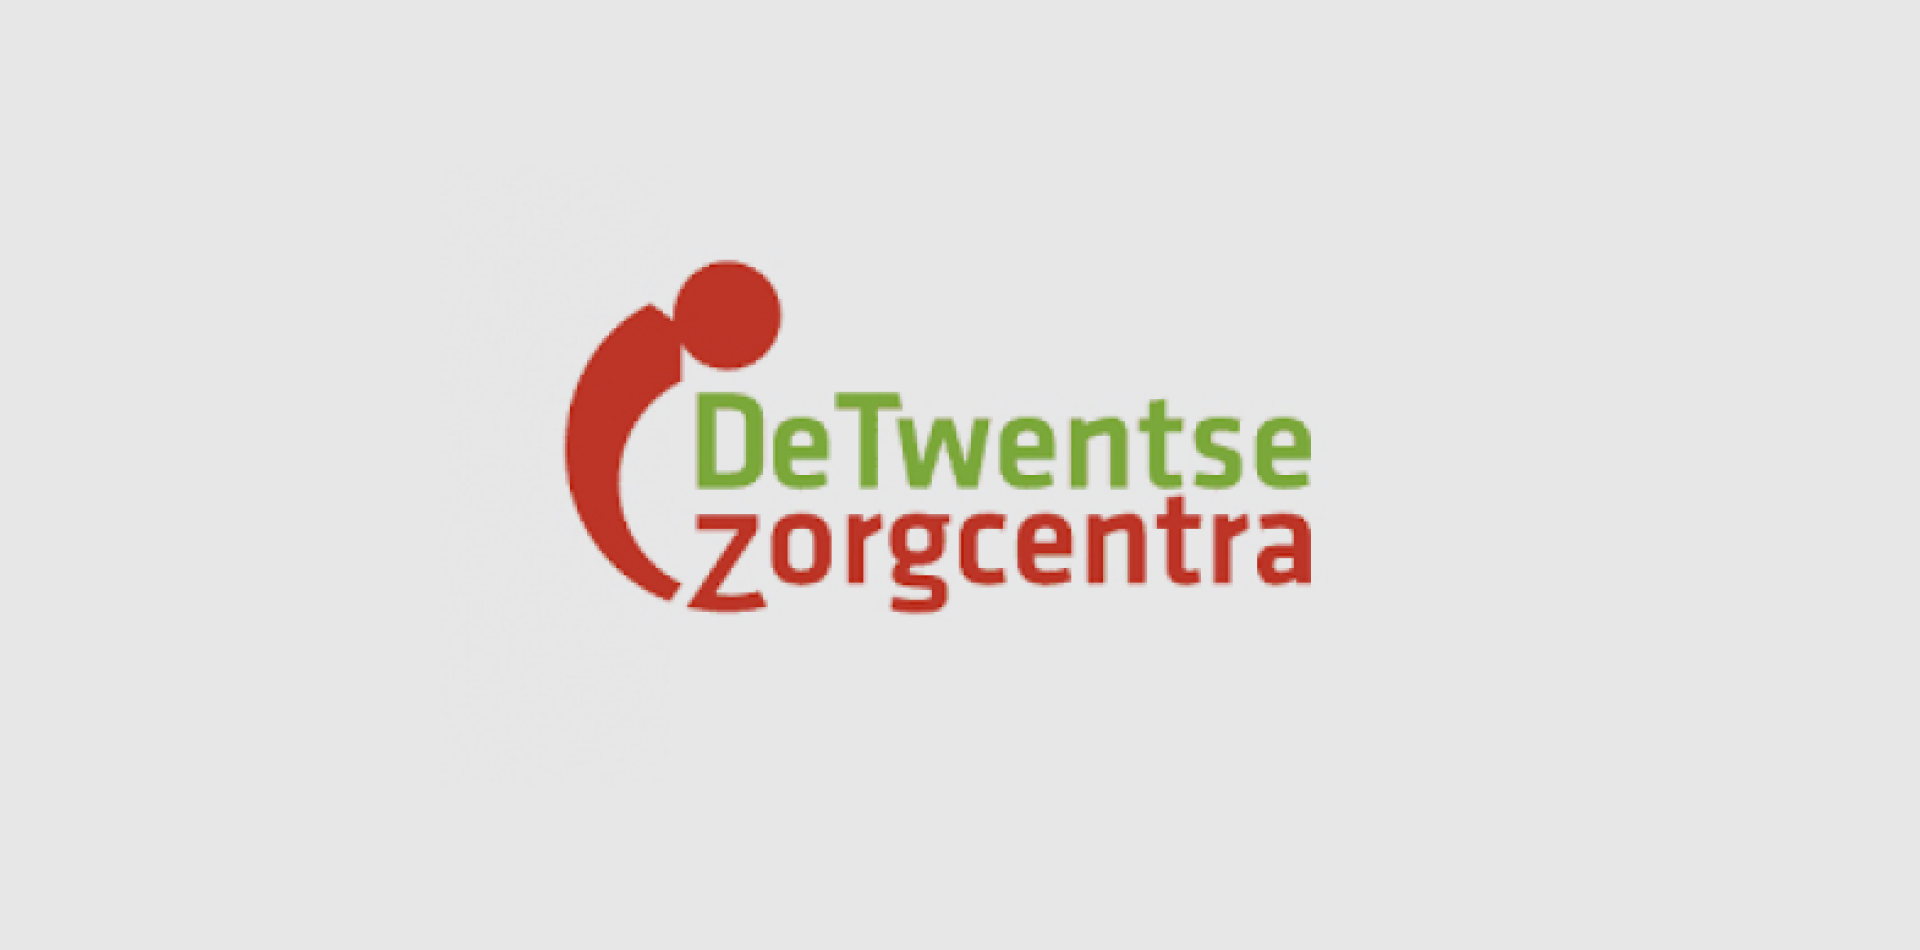 Twentse_zorgcentra-735f89de Services | F2Connect